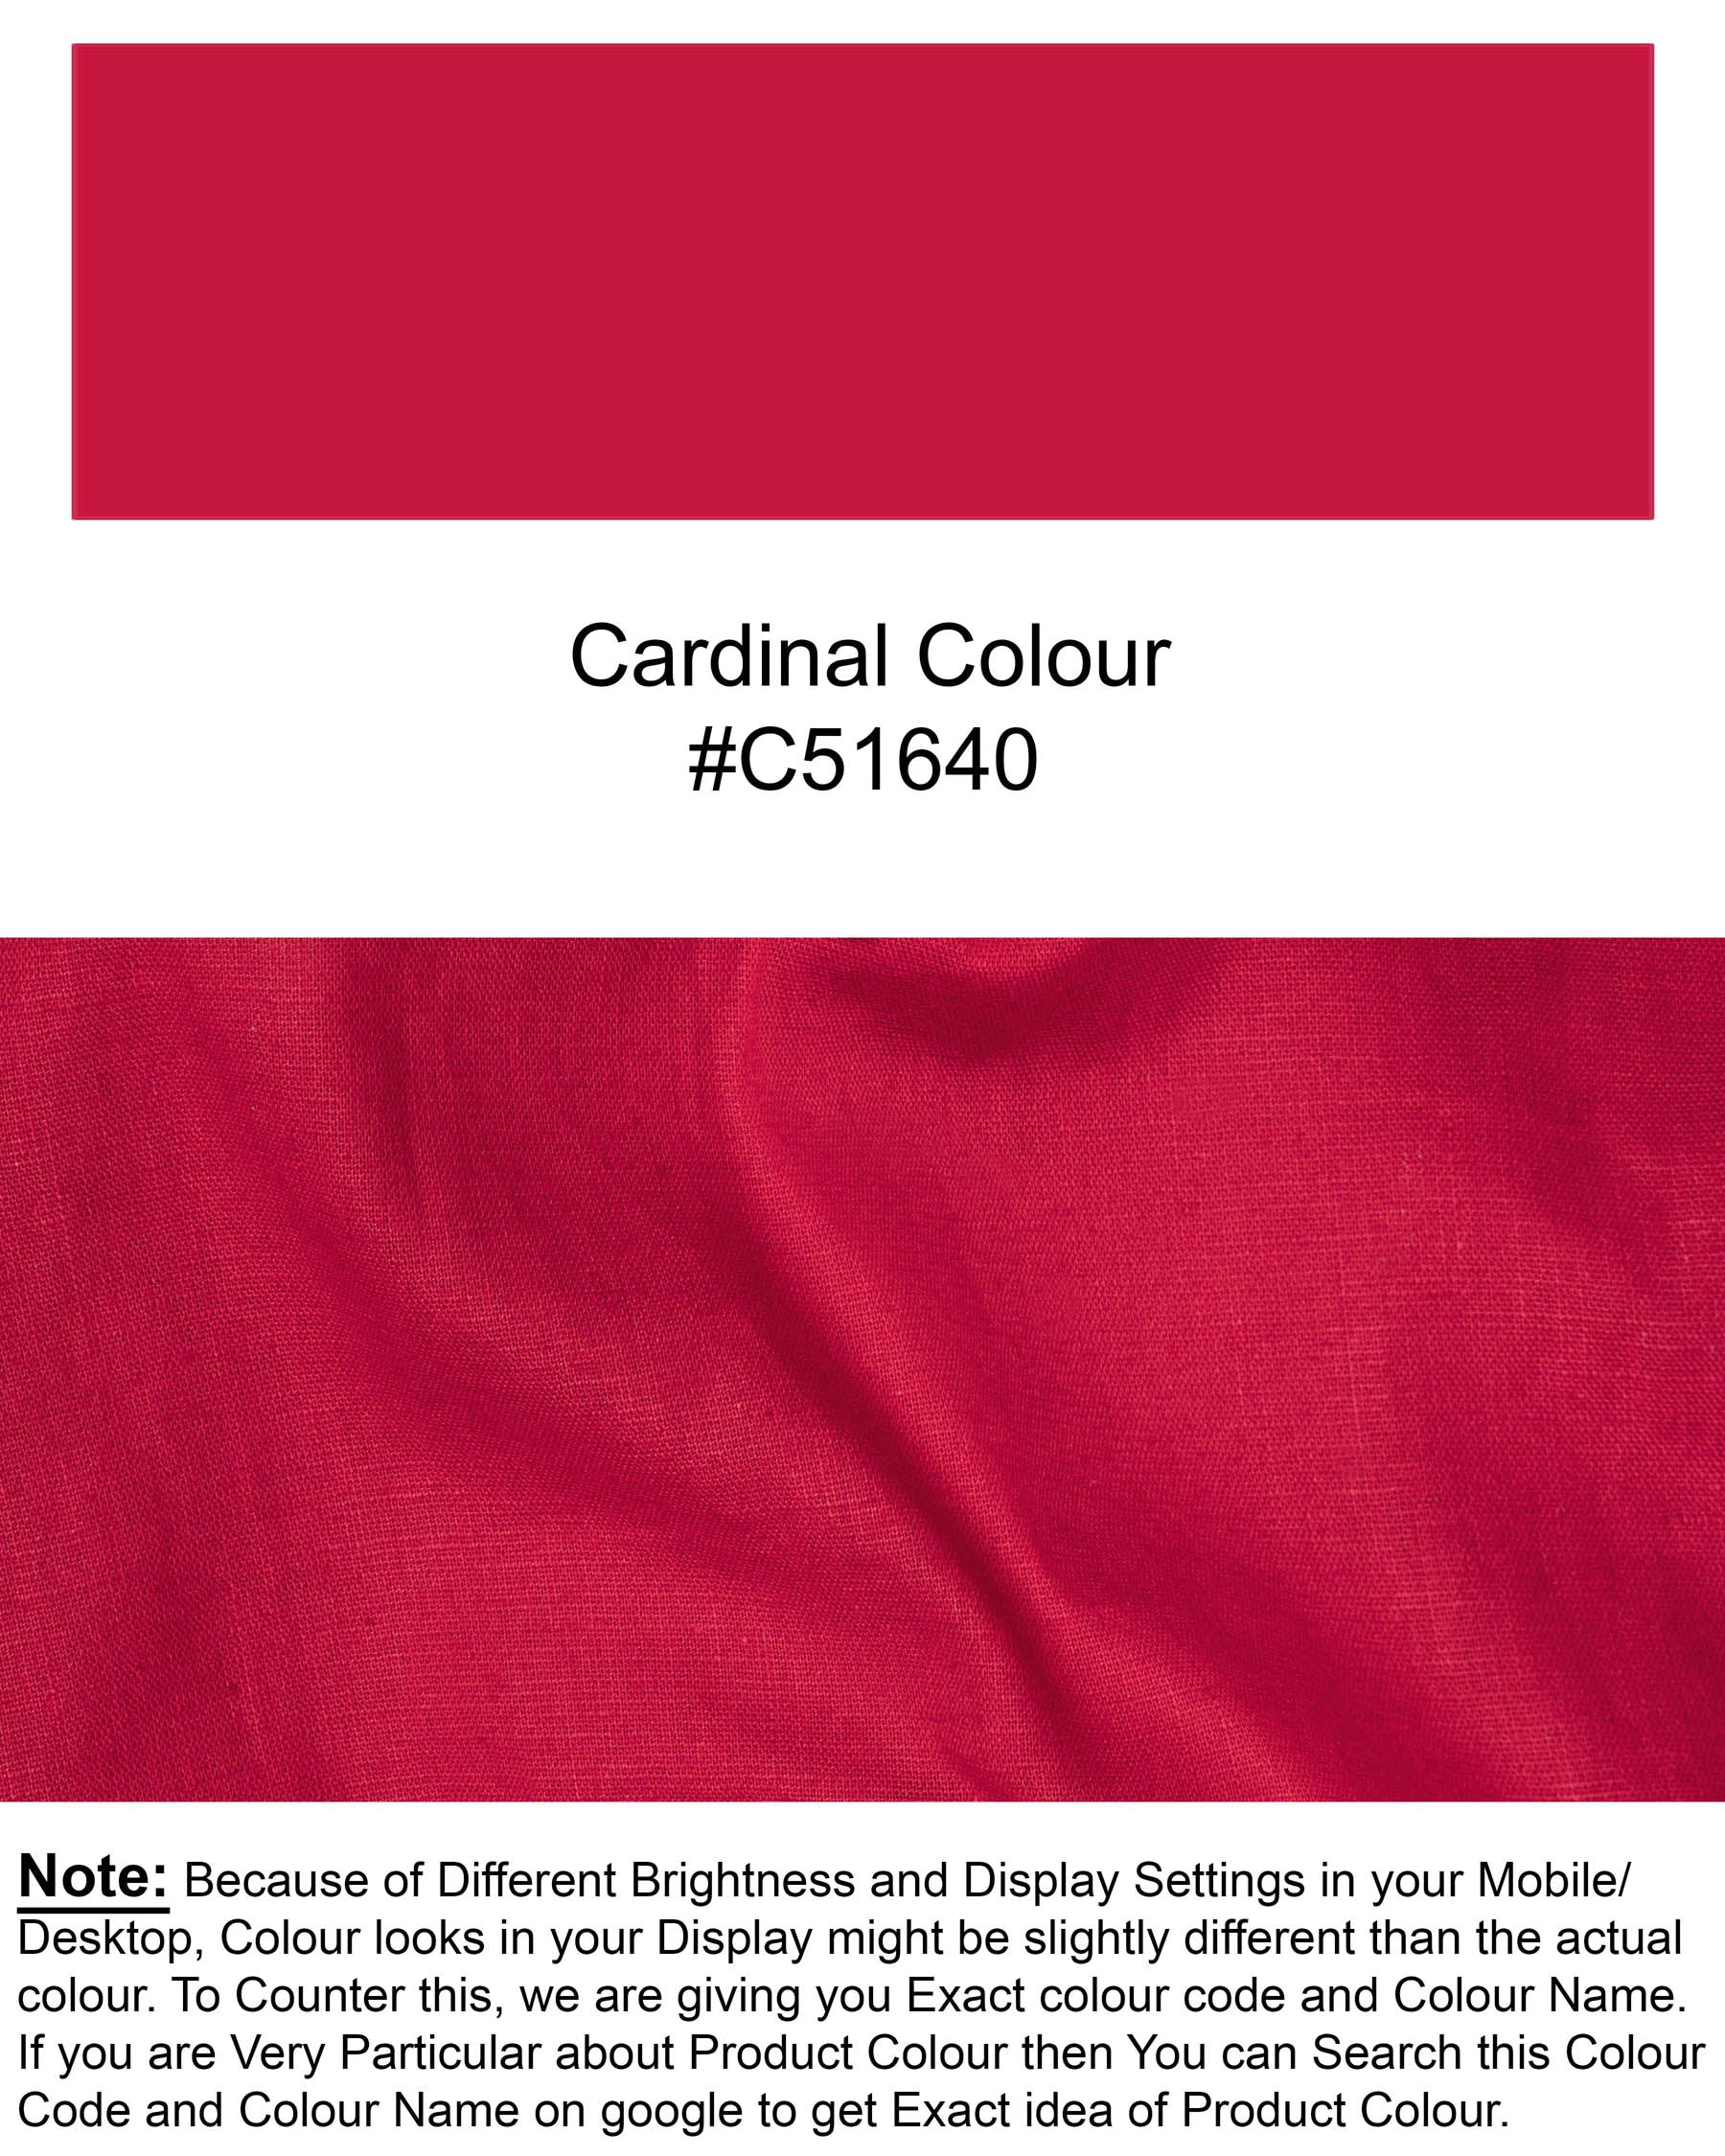 Cardinal Red Luxurious Linen Shirt 5985-BD-38, 5985-BD-H-38, 5985-BD-39, 5985-BD-H-39, 5985-BD-40, 5985-BD-H-40, 5985-BD-42, 5985-BD-H-42, 5985-BD-44, 5985-BD-H-44, 5985-BD-46, 5985-BD-H-46, 5985-BD-48, 5985-BD-H-48, 5985-BD-50, 5985-BD-H-50, 5985-BD-52, 5985-BD-H-52